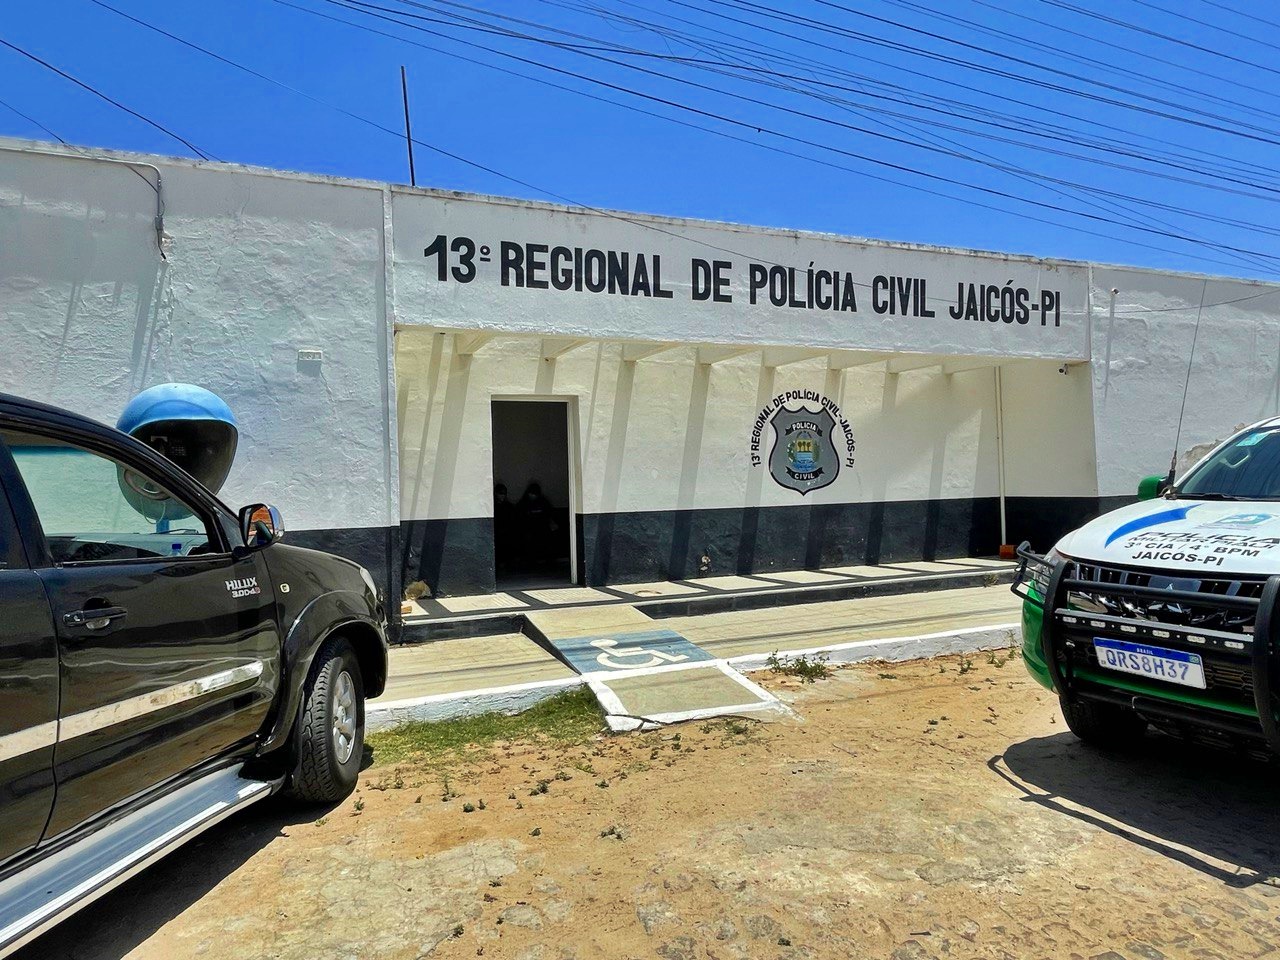 O caso está sendo investigado pela Polícia Civil, através da Delegacia de Jaicós - Foto: Reprodução/Cidades na Net